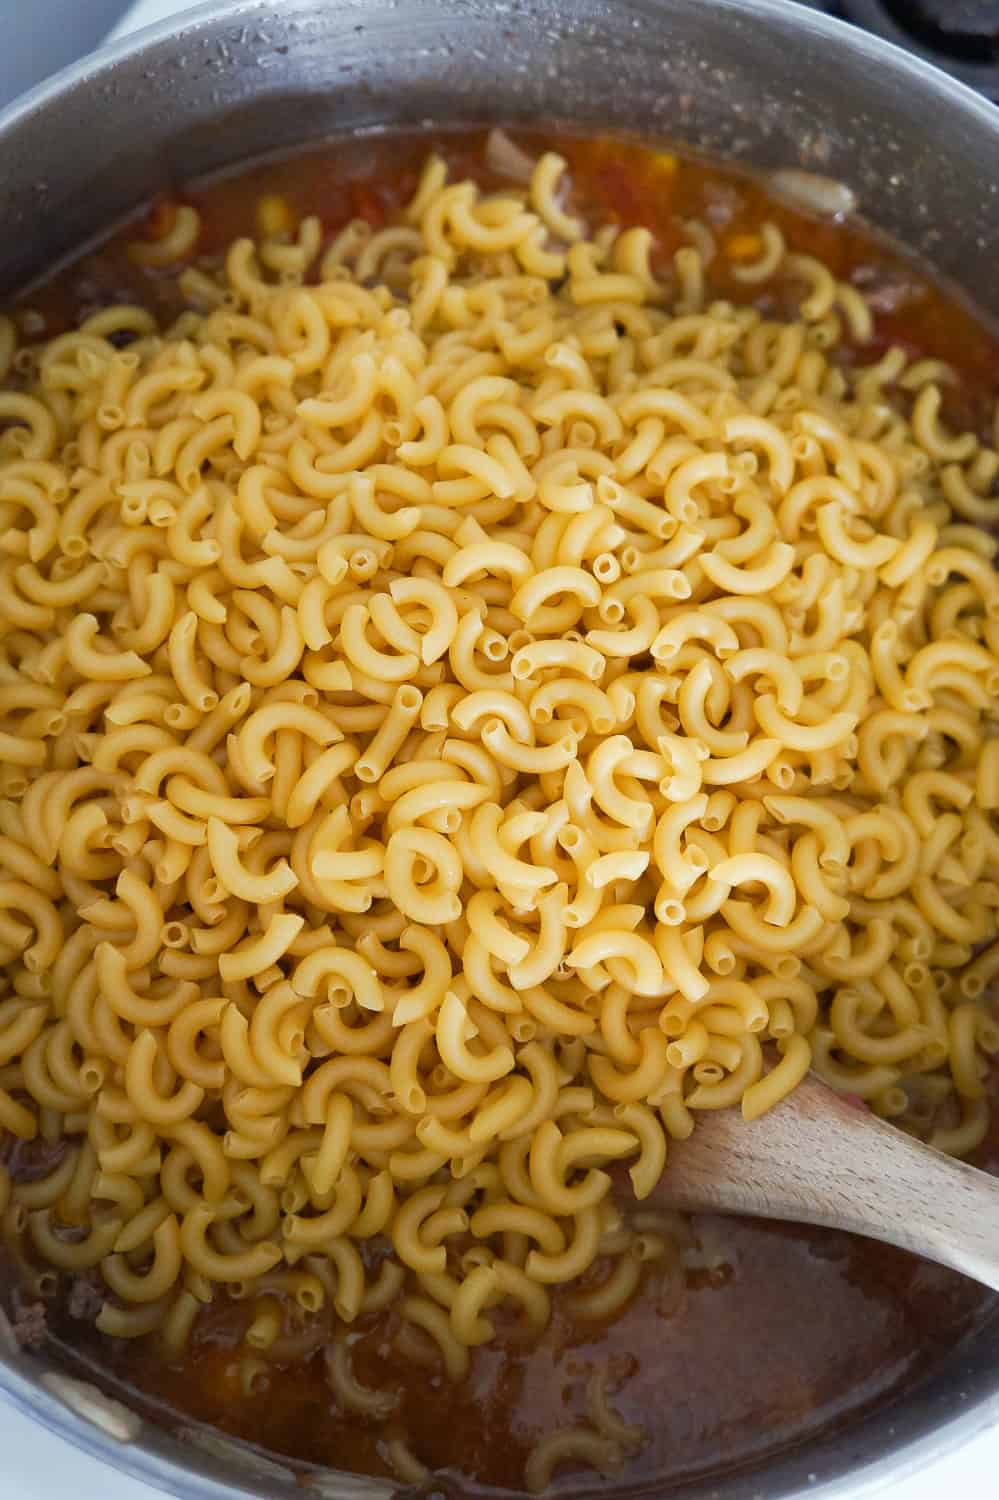 uncooked macaroni noodles